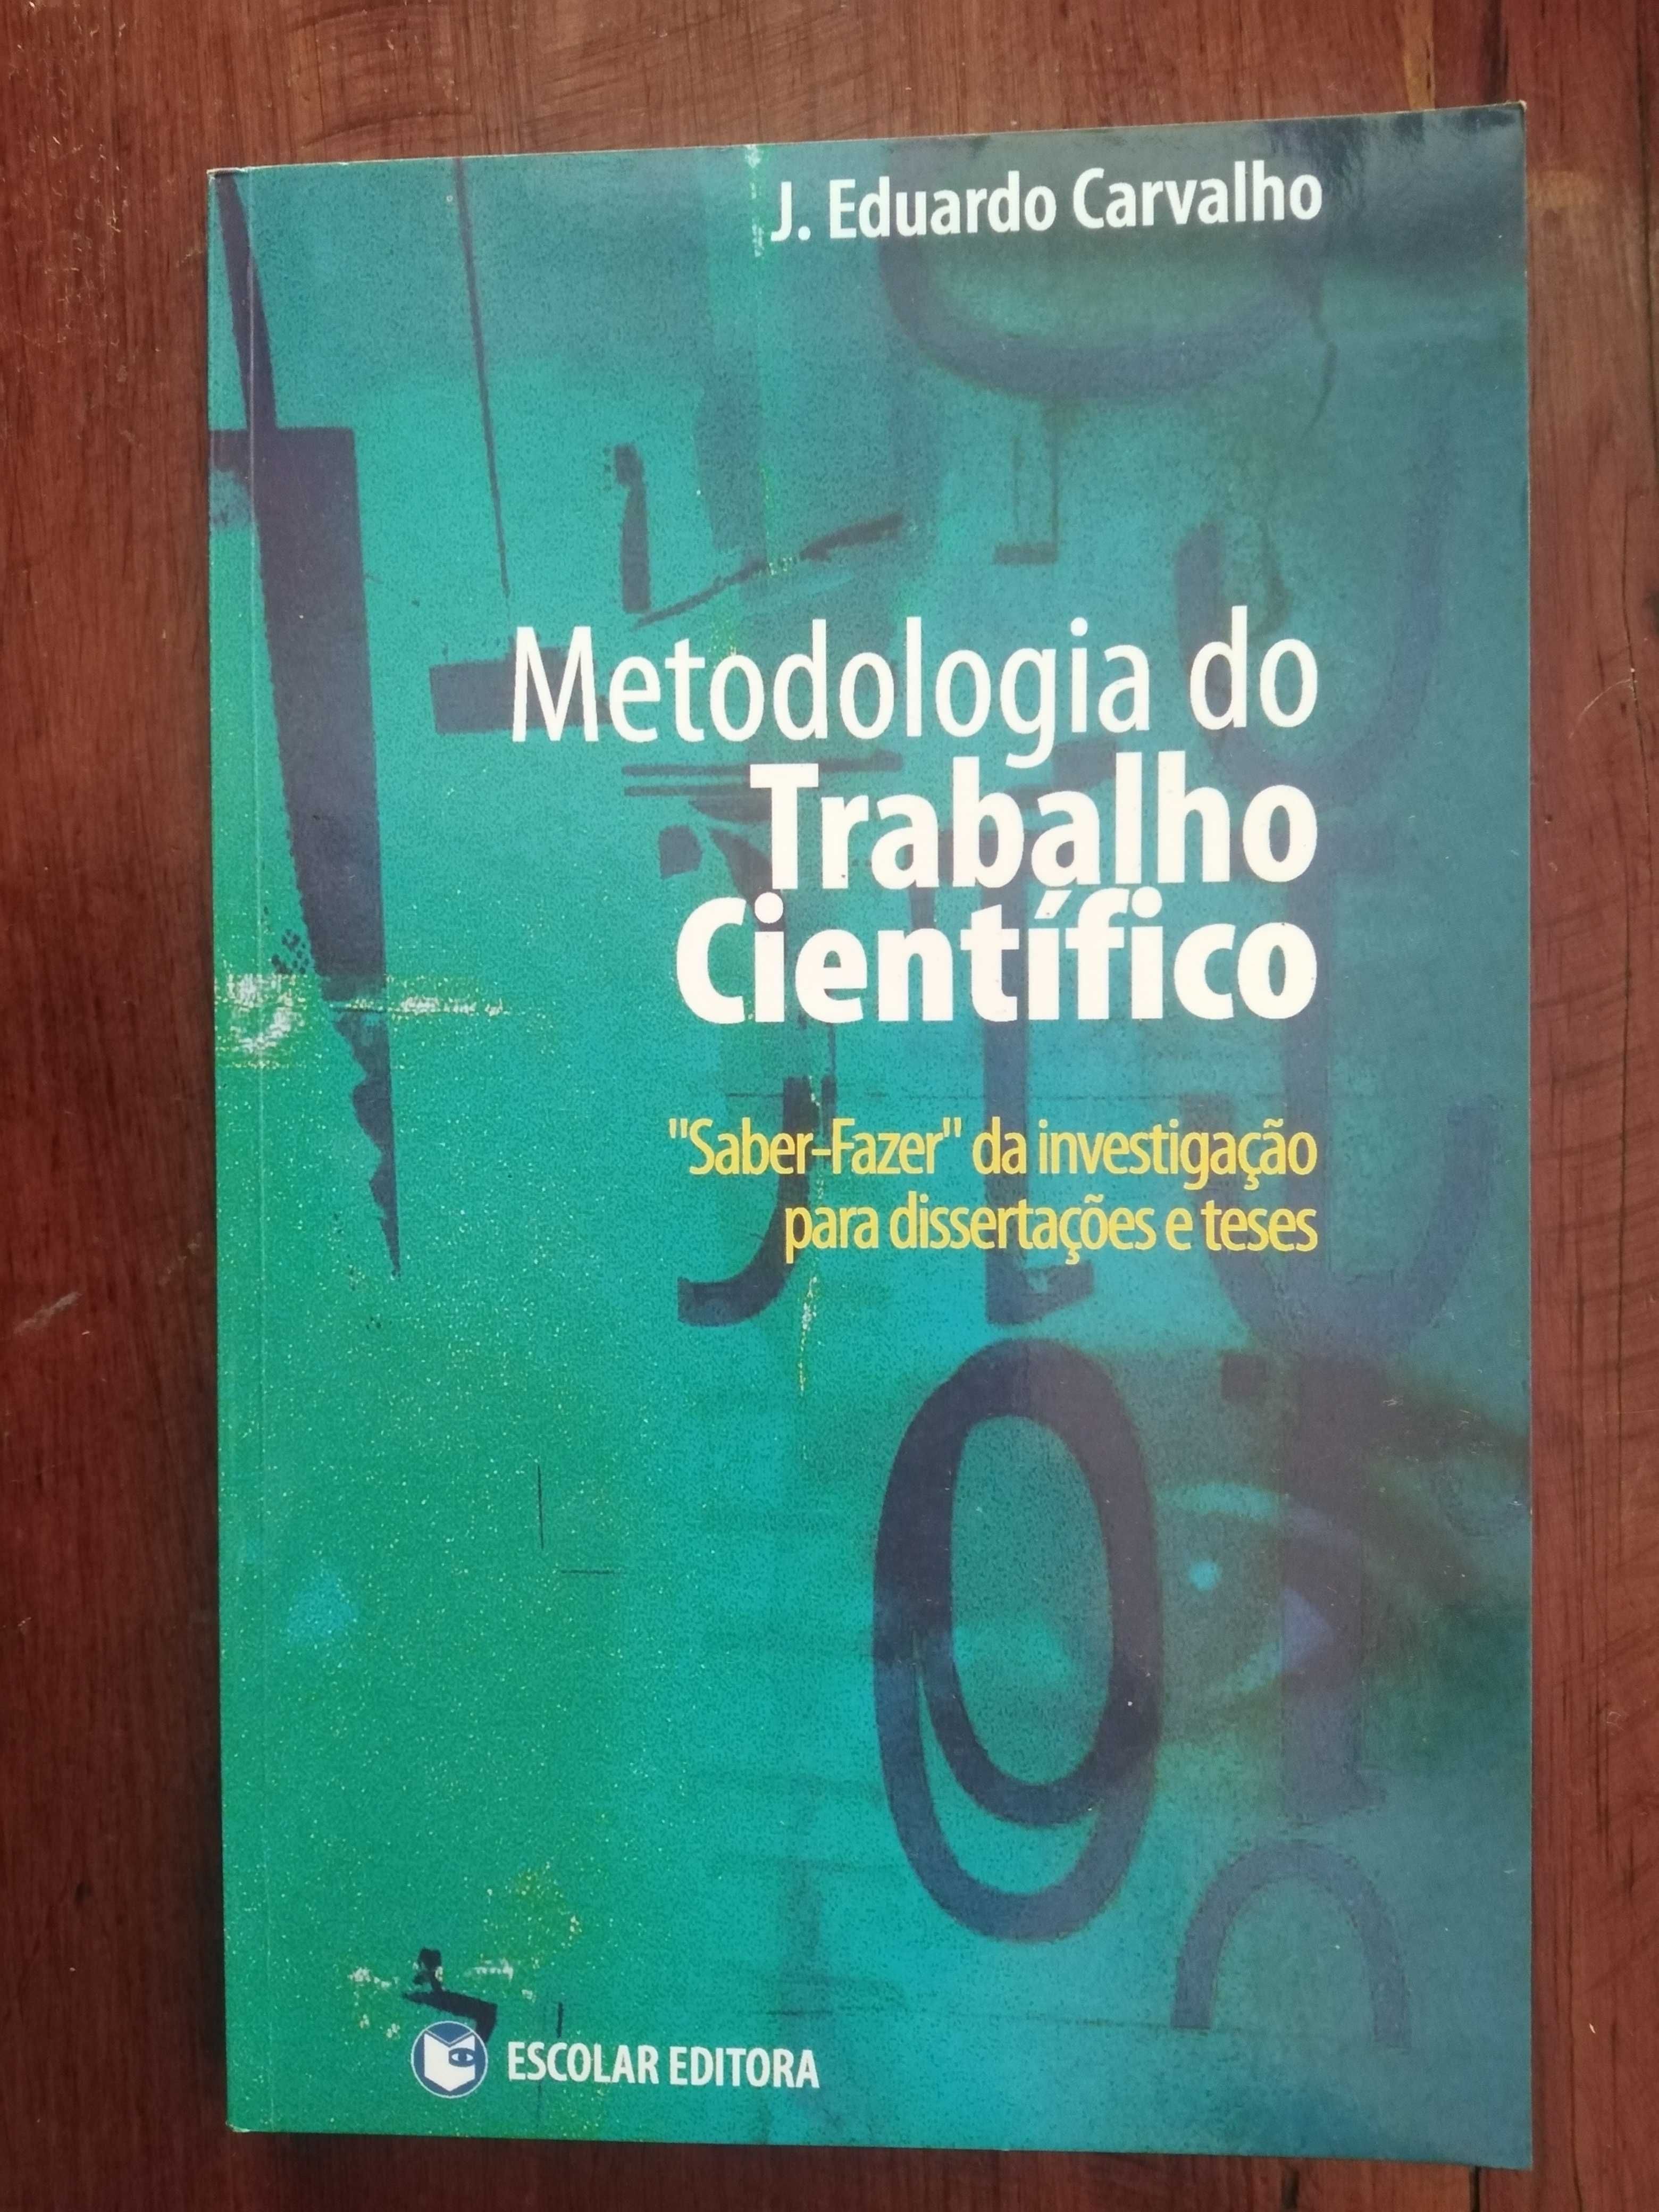 J. Eduardo Carvalho - Metodologia do Trabalho Científico